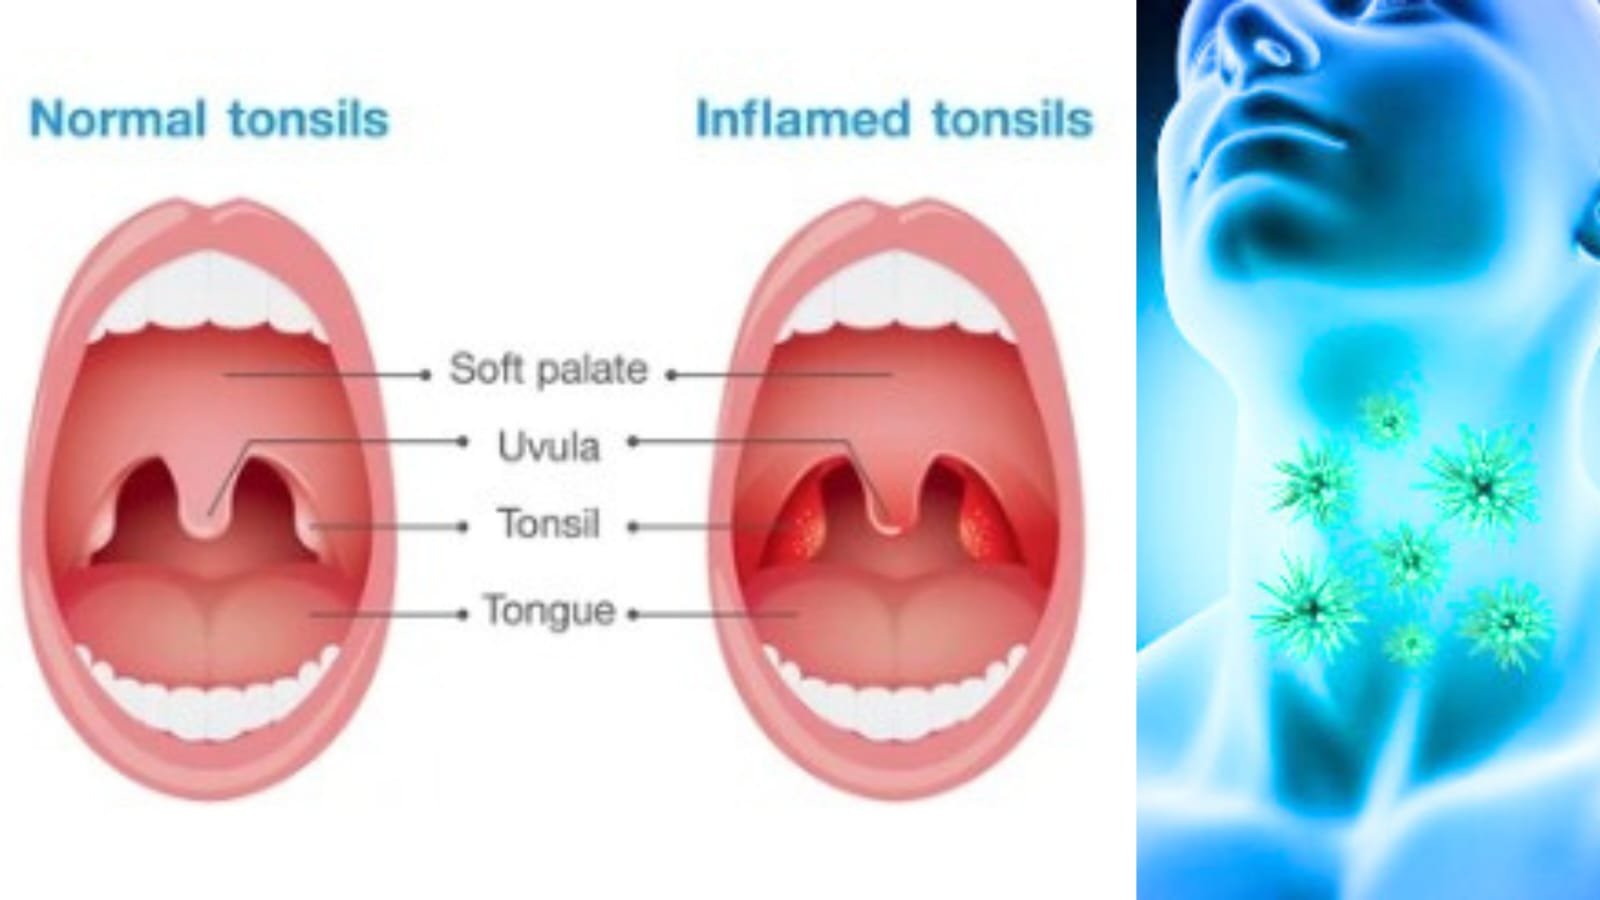 Tonsils 